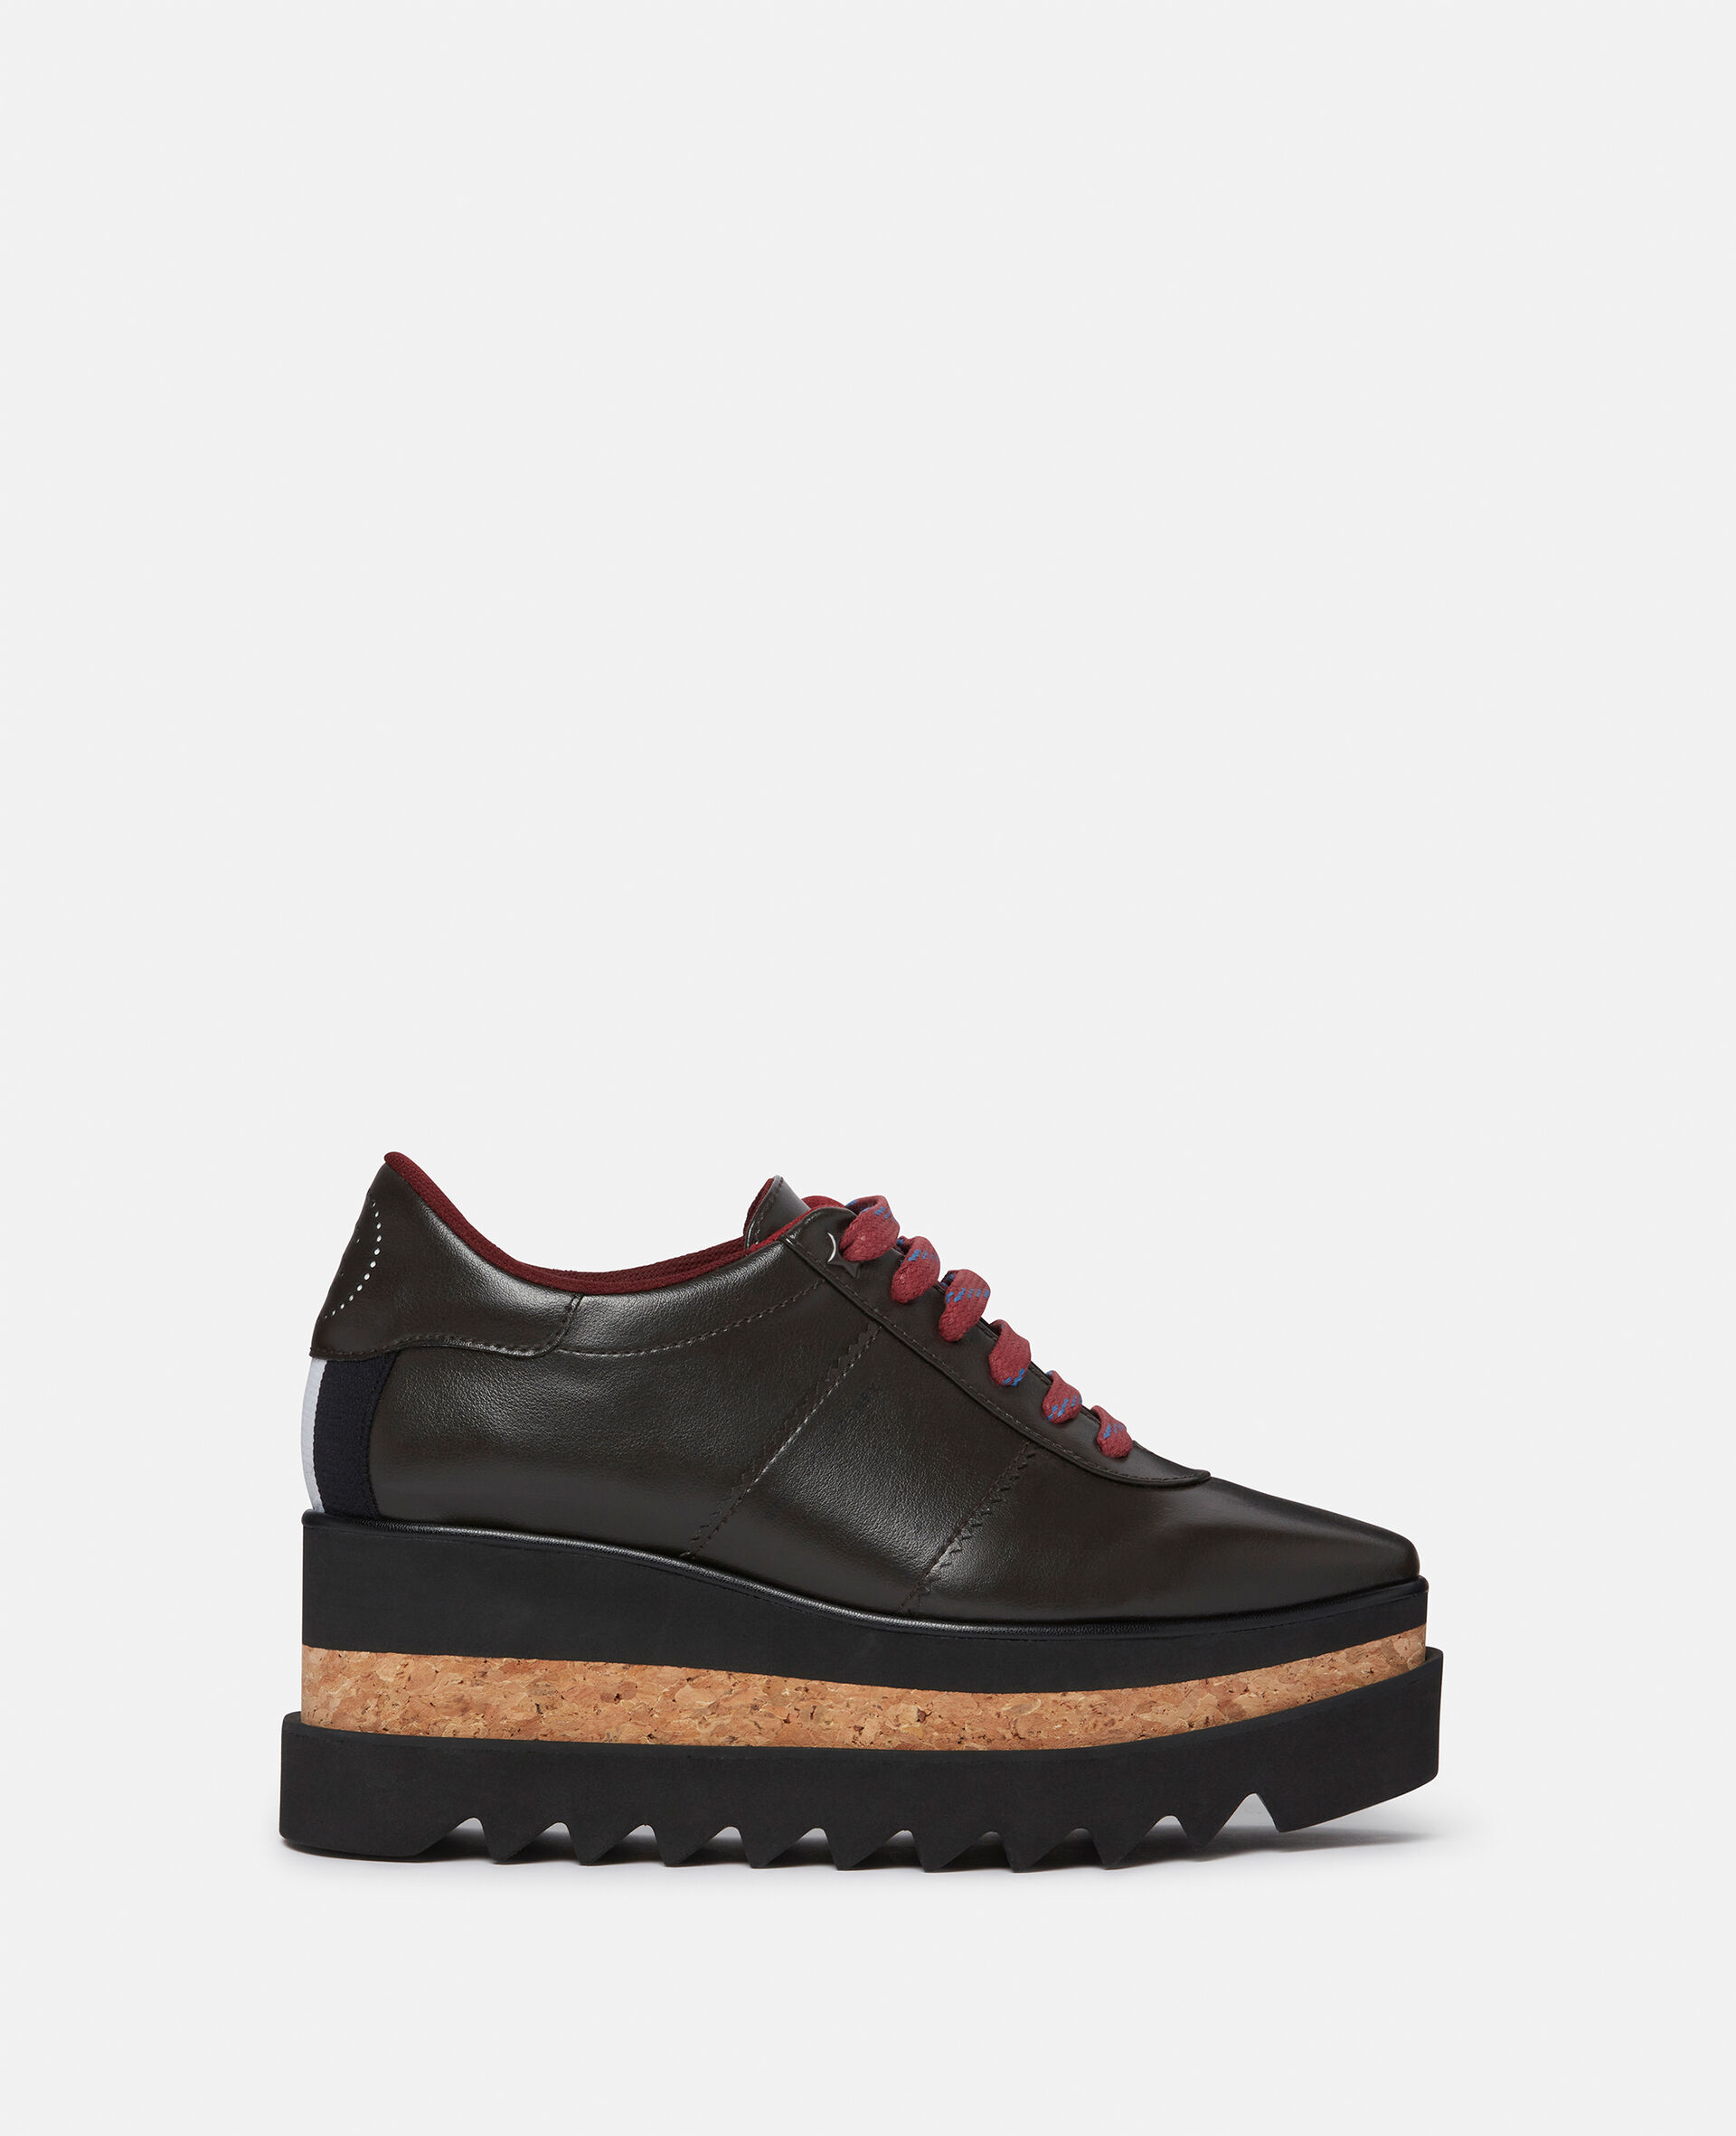 Sneak-Elyse Platform Sneakers-Brown-large image number 0